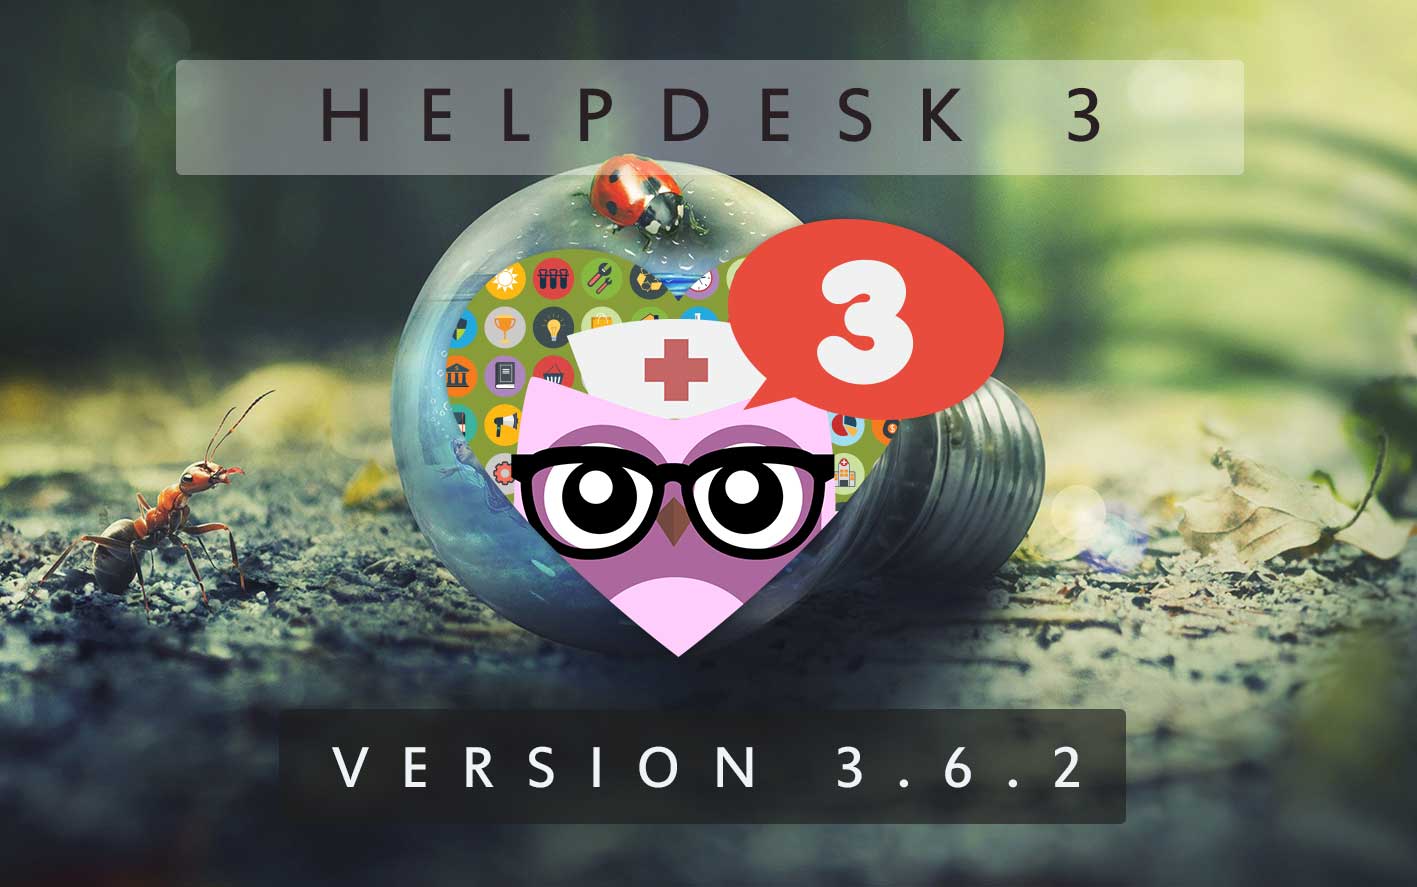 HelpDesk 3 - Version 3.6.2